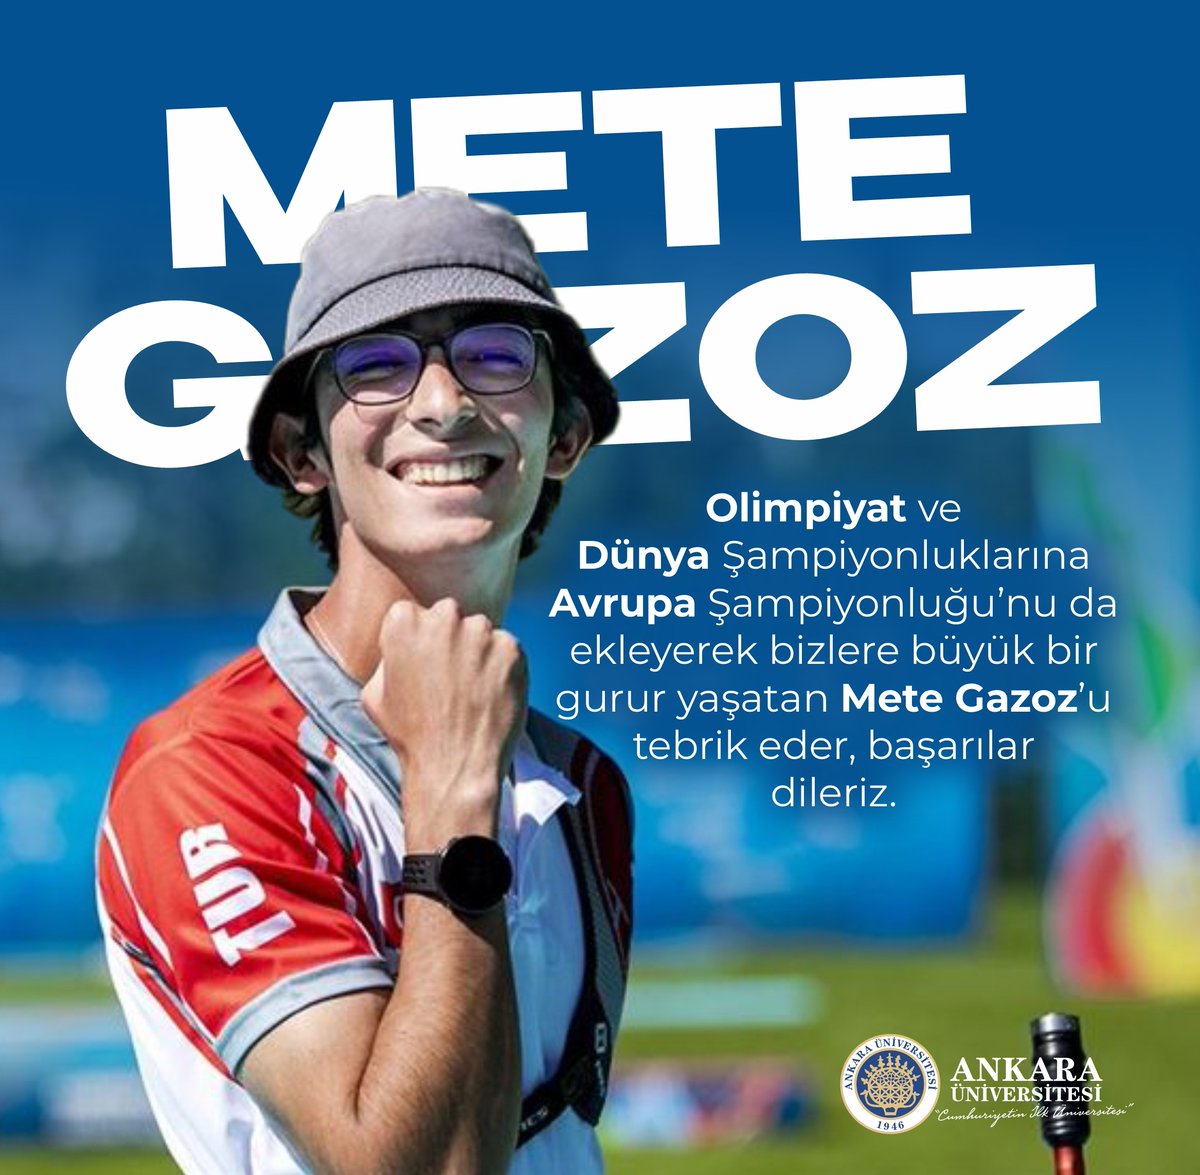 Olimpiyat ve Dünya Şampiyonluklarına Avrupa Şampiyonluğu’nu da ekleyerek bizlere büyük bir gurur yaşatan Mete Gazoz’u tebrik eder başarılarının devamını dileriz. #MeteGazoz